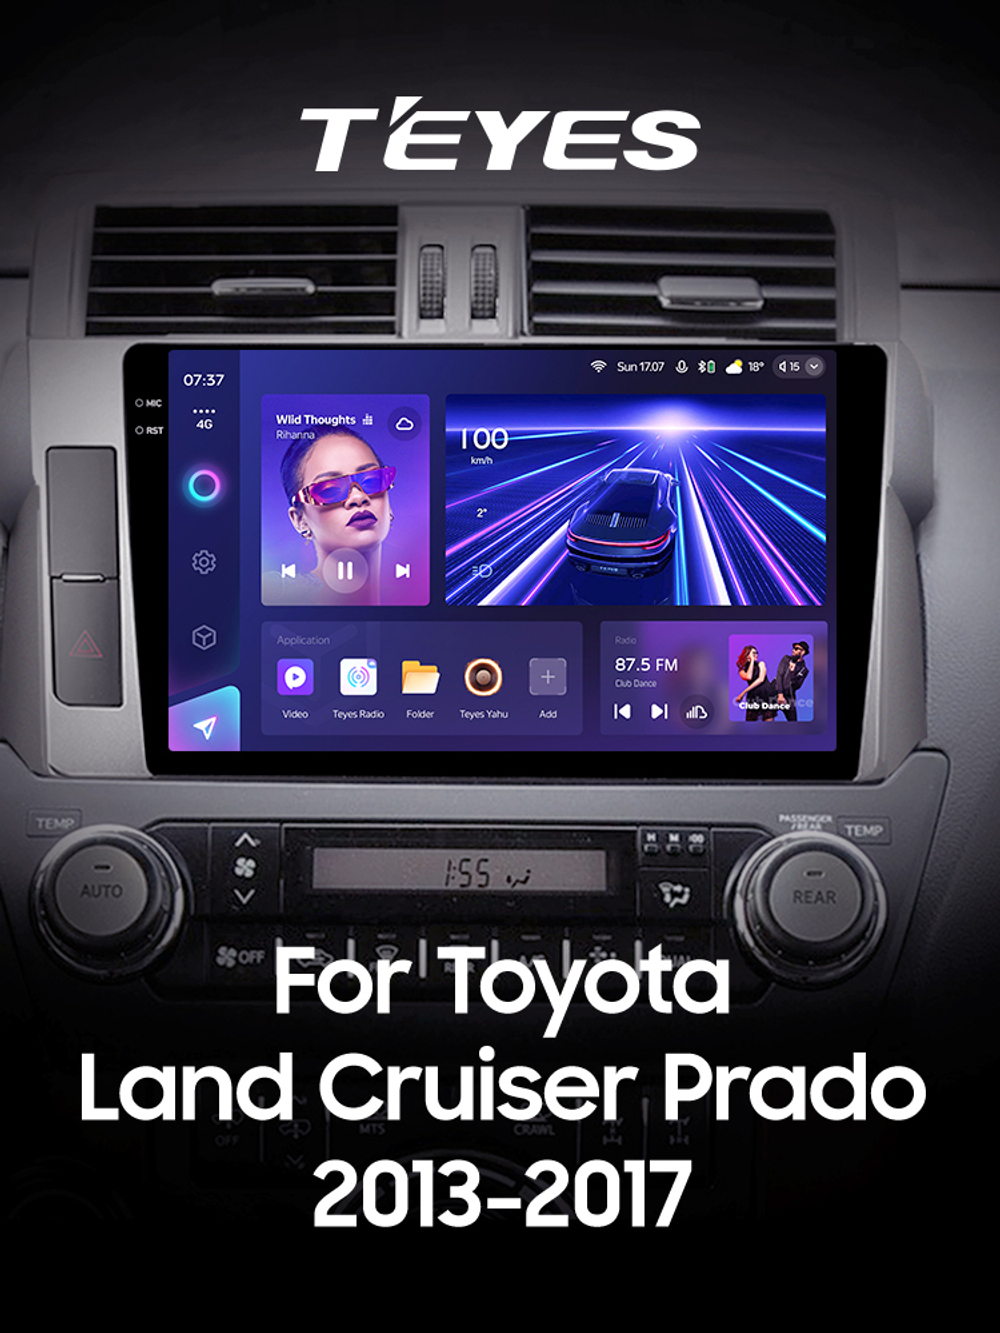 Teyes CC3 2K 10,2"для Toyota Land Cruiser Prado 2013-2017